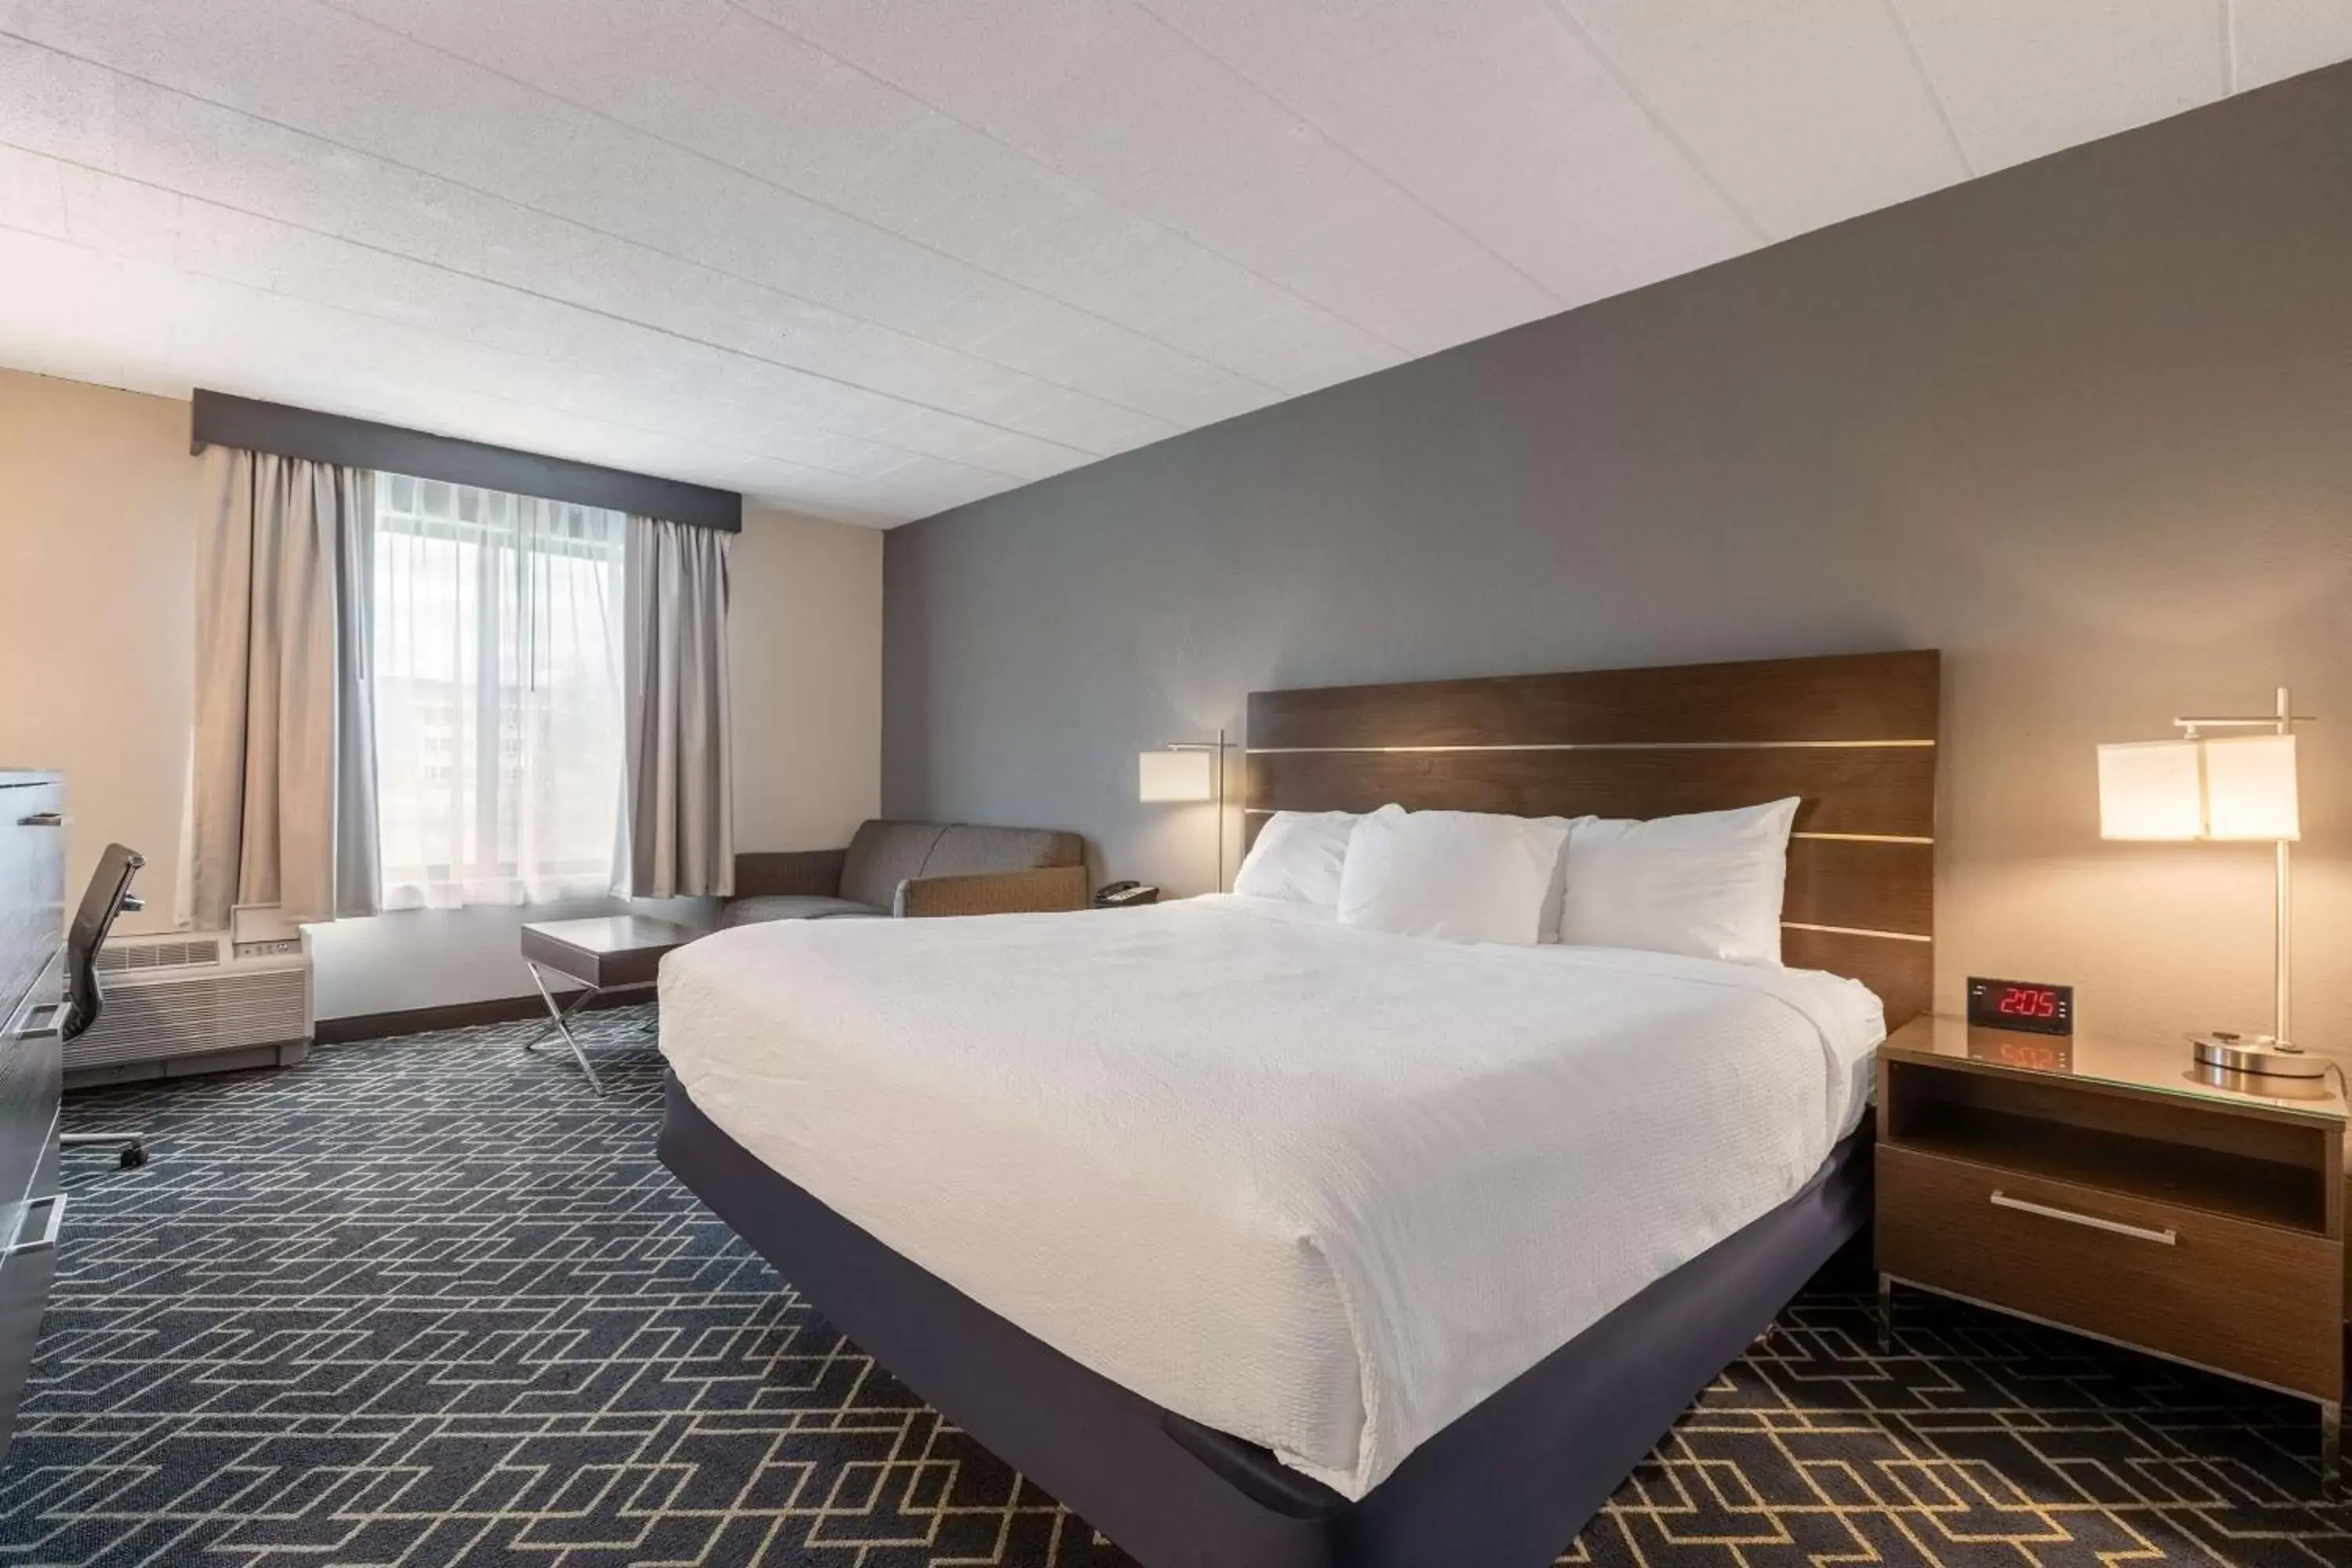 Bedroom, Bed in Best Western Hunt's Landing Hotel Matamoras Milford